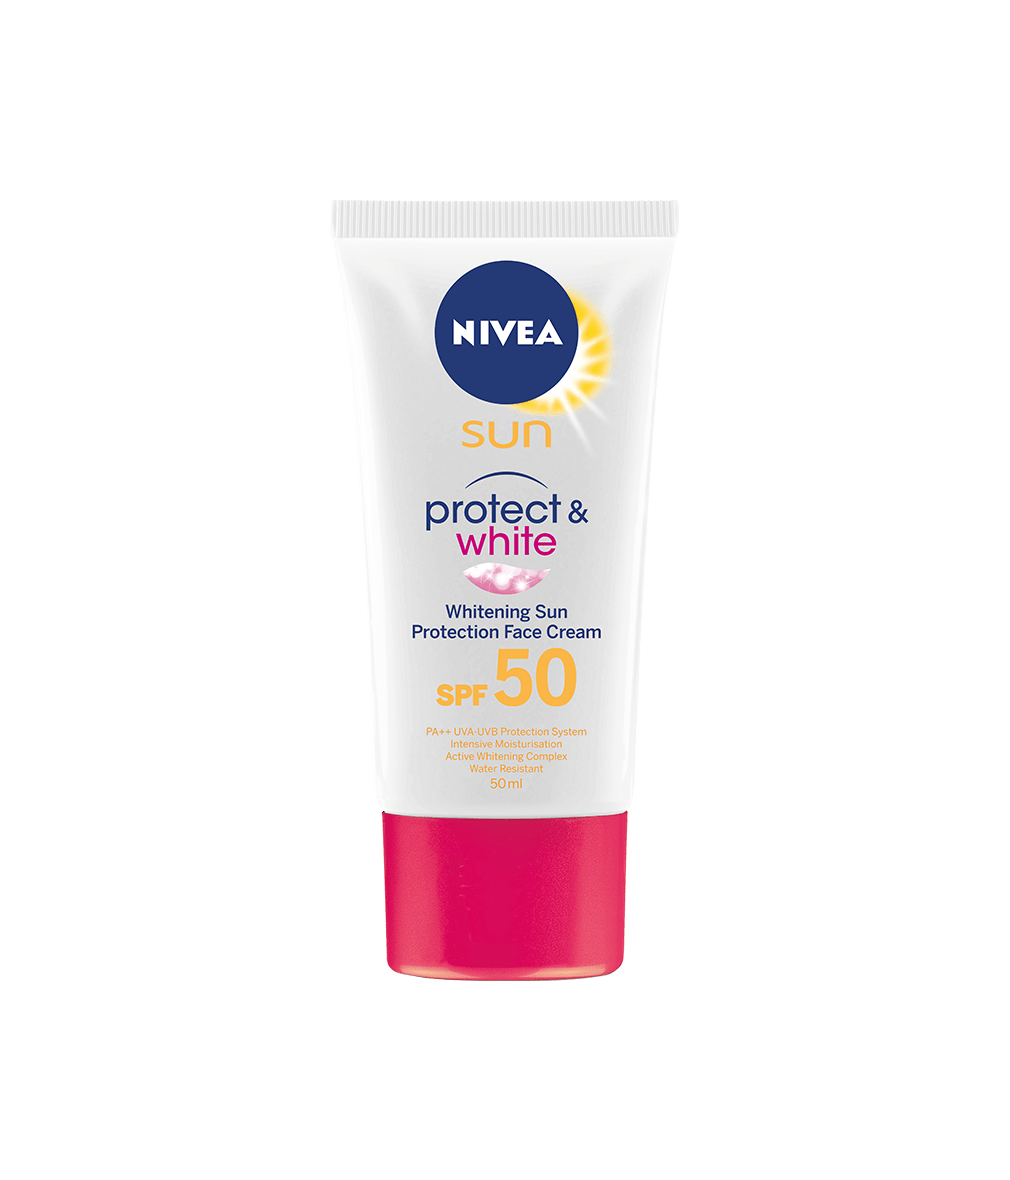 sunscreen cream for face